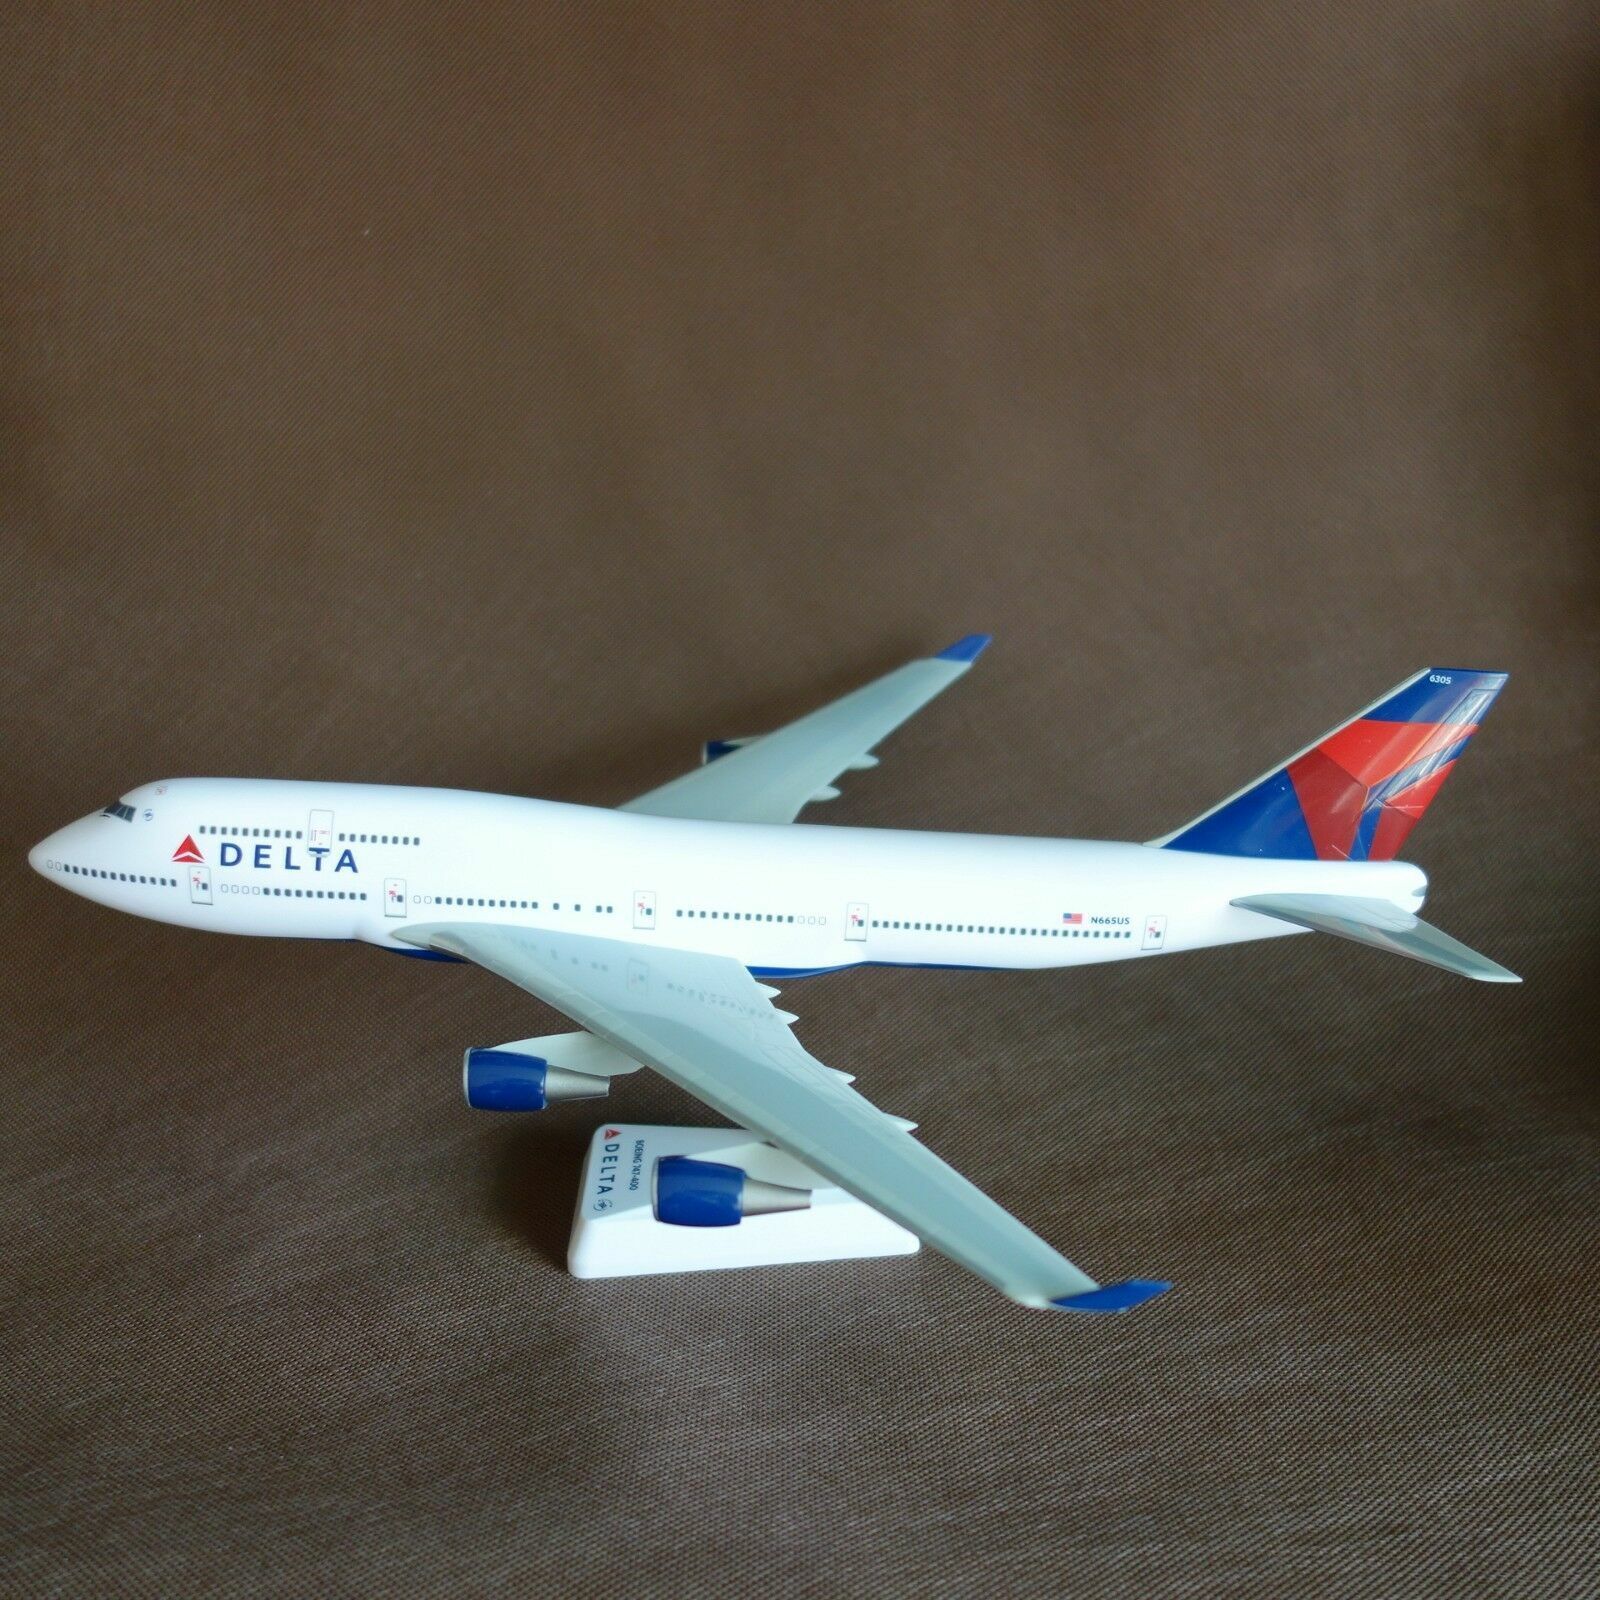 1/200 Delta Airlines Boeing B747-400 Desk Display Airplane Model Reg # N665US